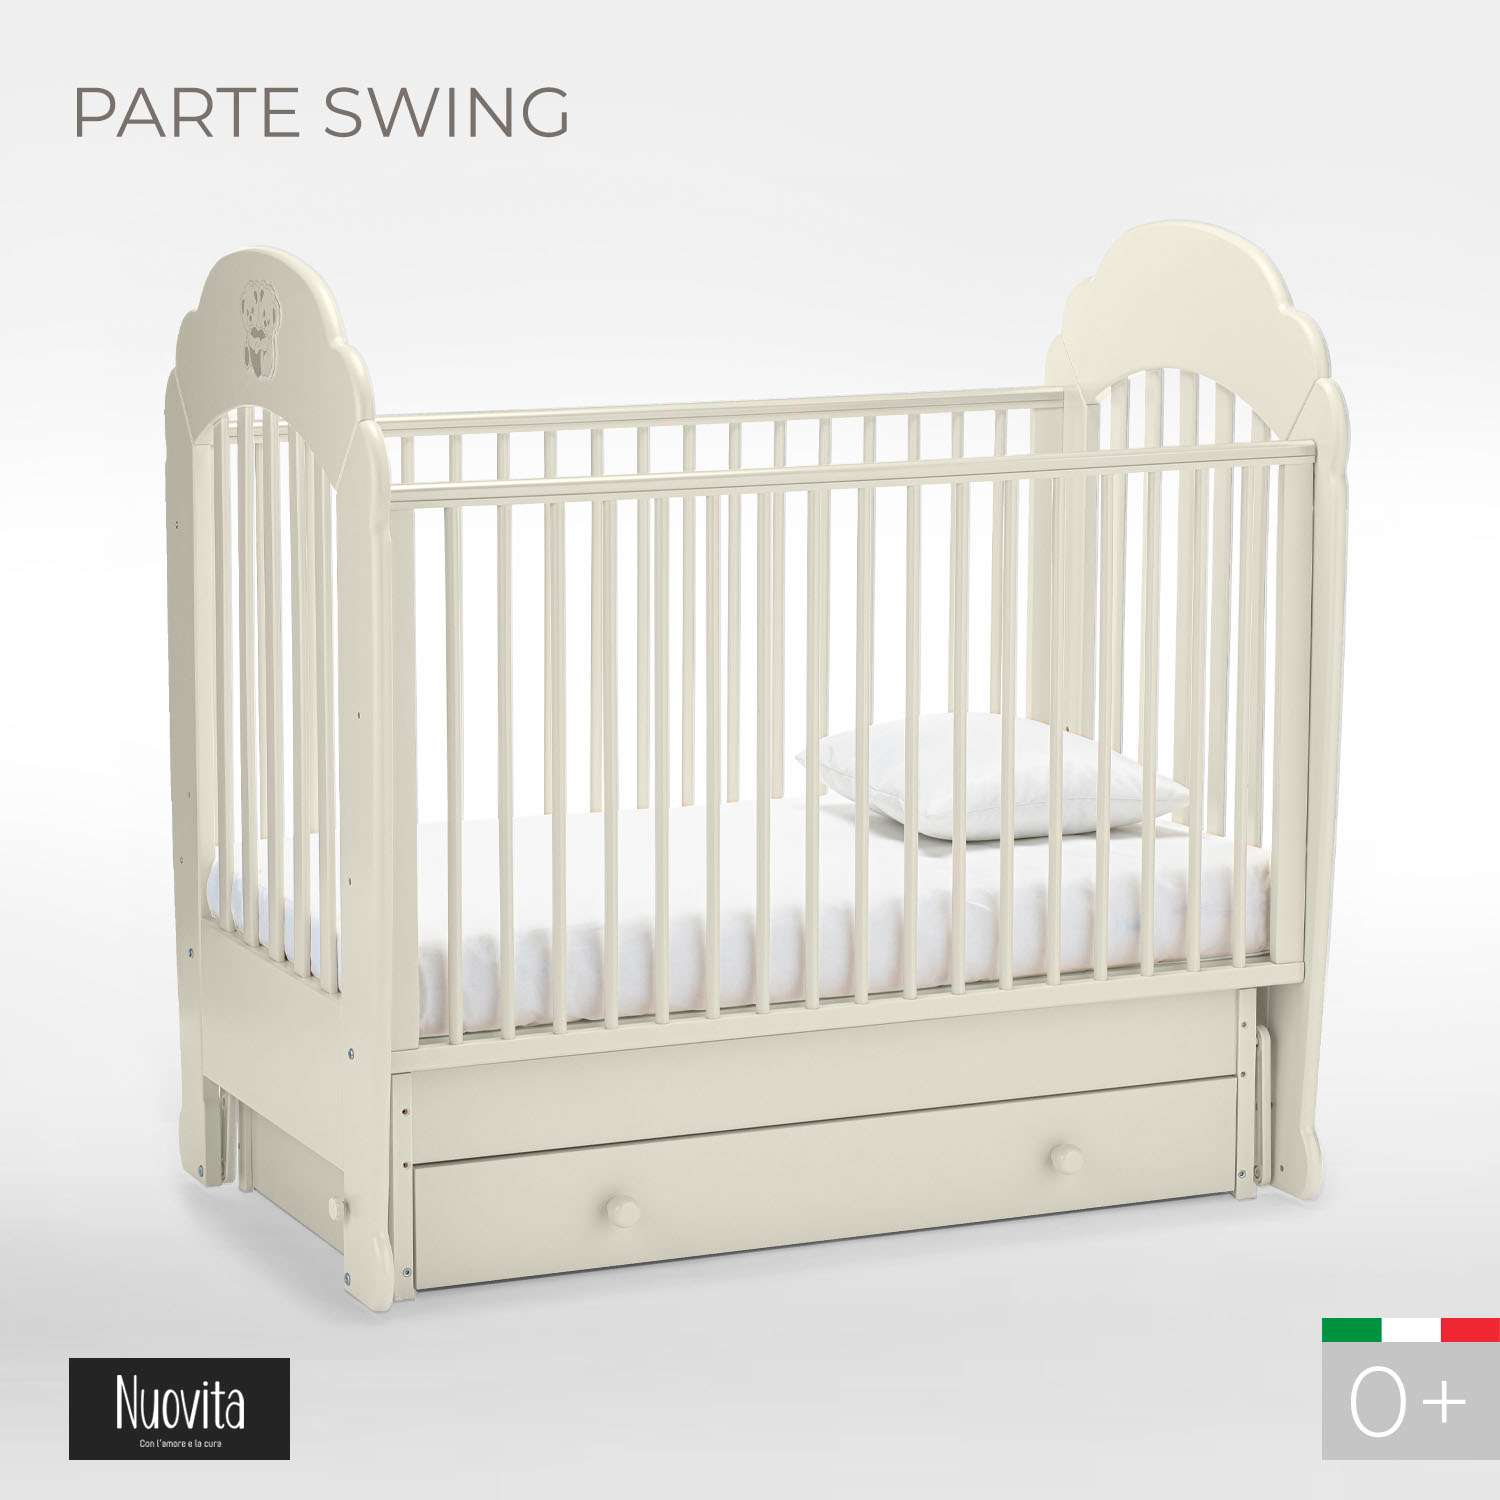 Детская кроватка Nuovita Parte Swing прямоугольная, поперечный маятник (ваниль) - фото 2